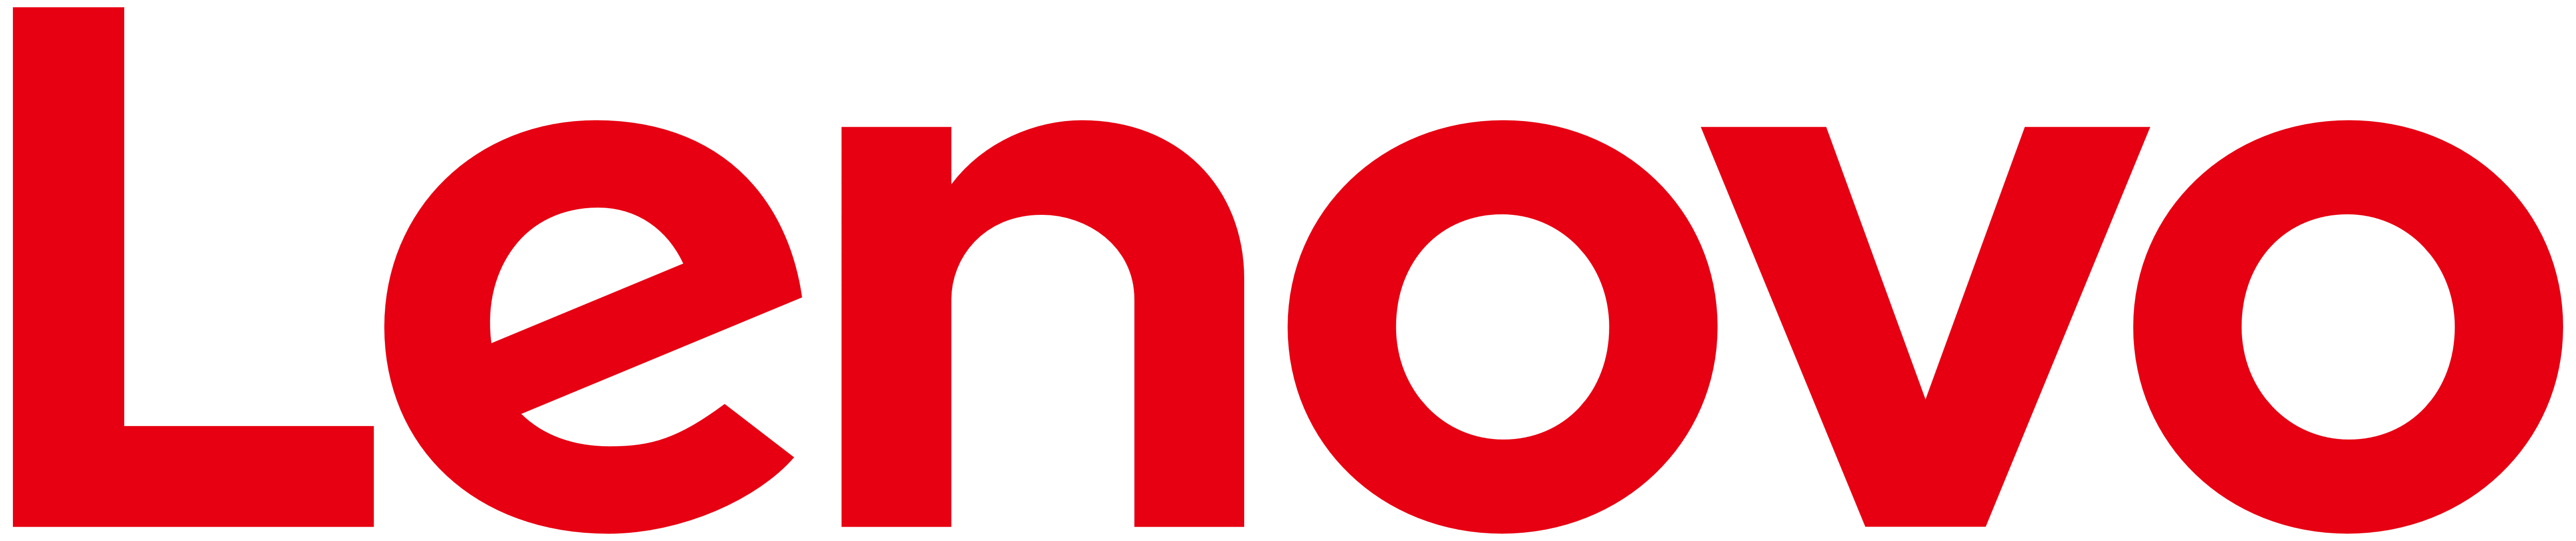 Branding - Lenovo Partner Net